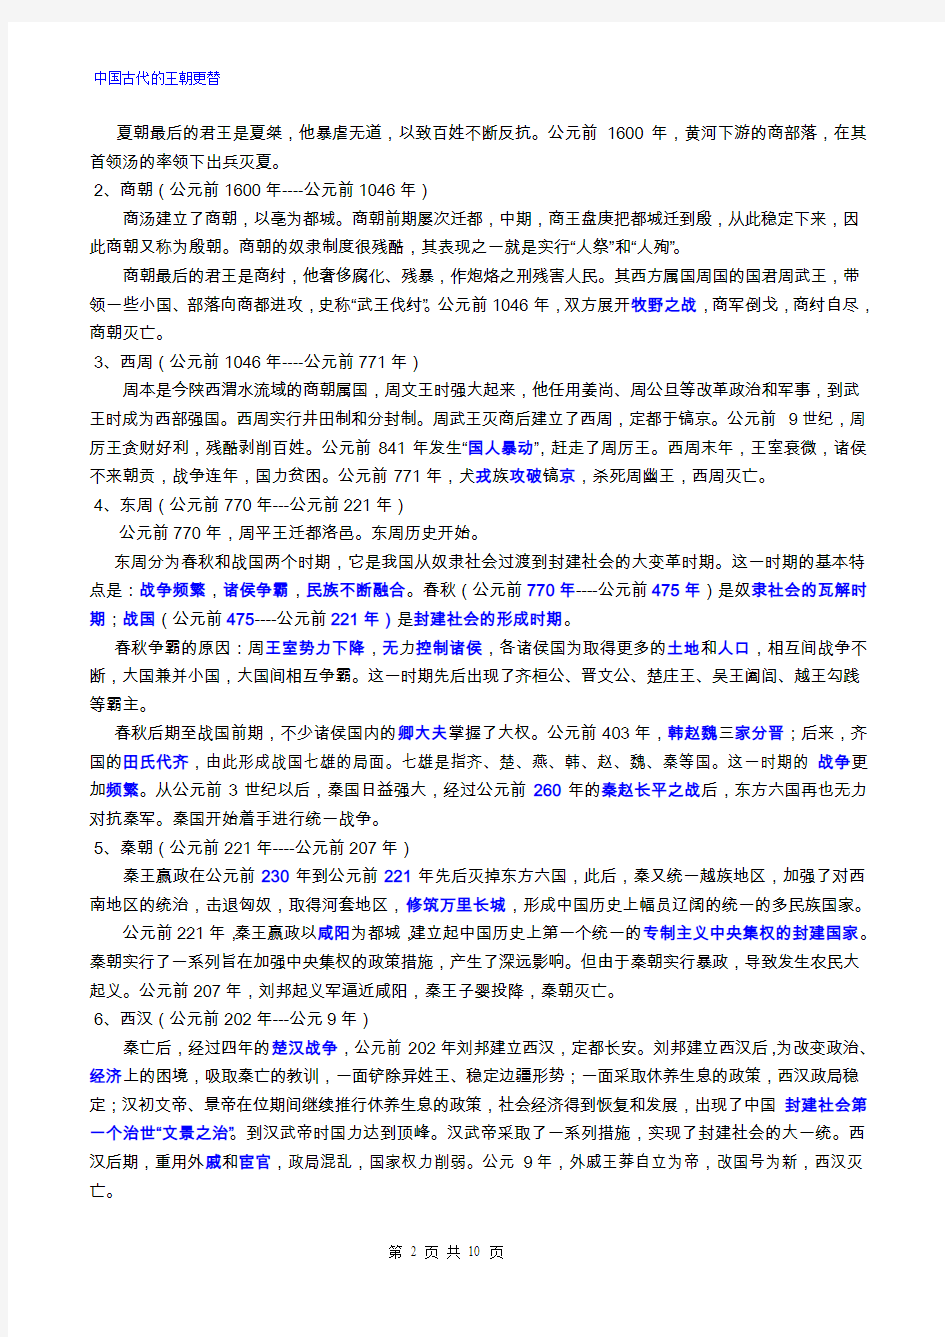 中国古代史政治部分基础知识专题(一)·中国古代的王朝更替资料